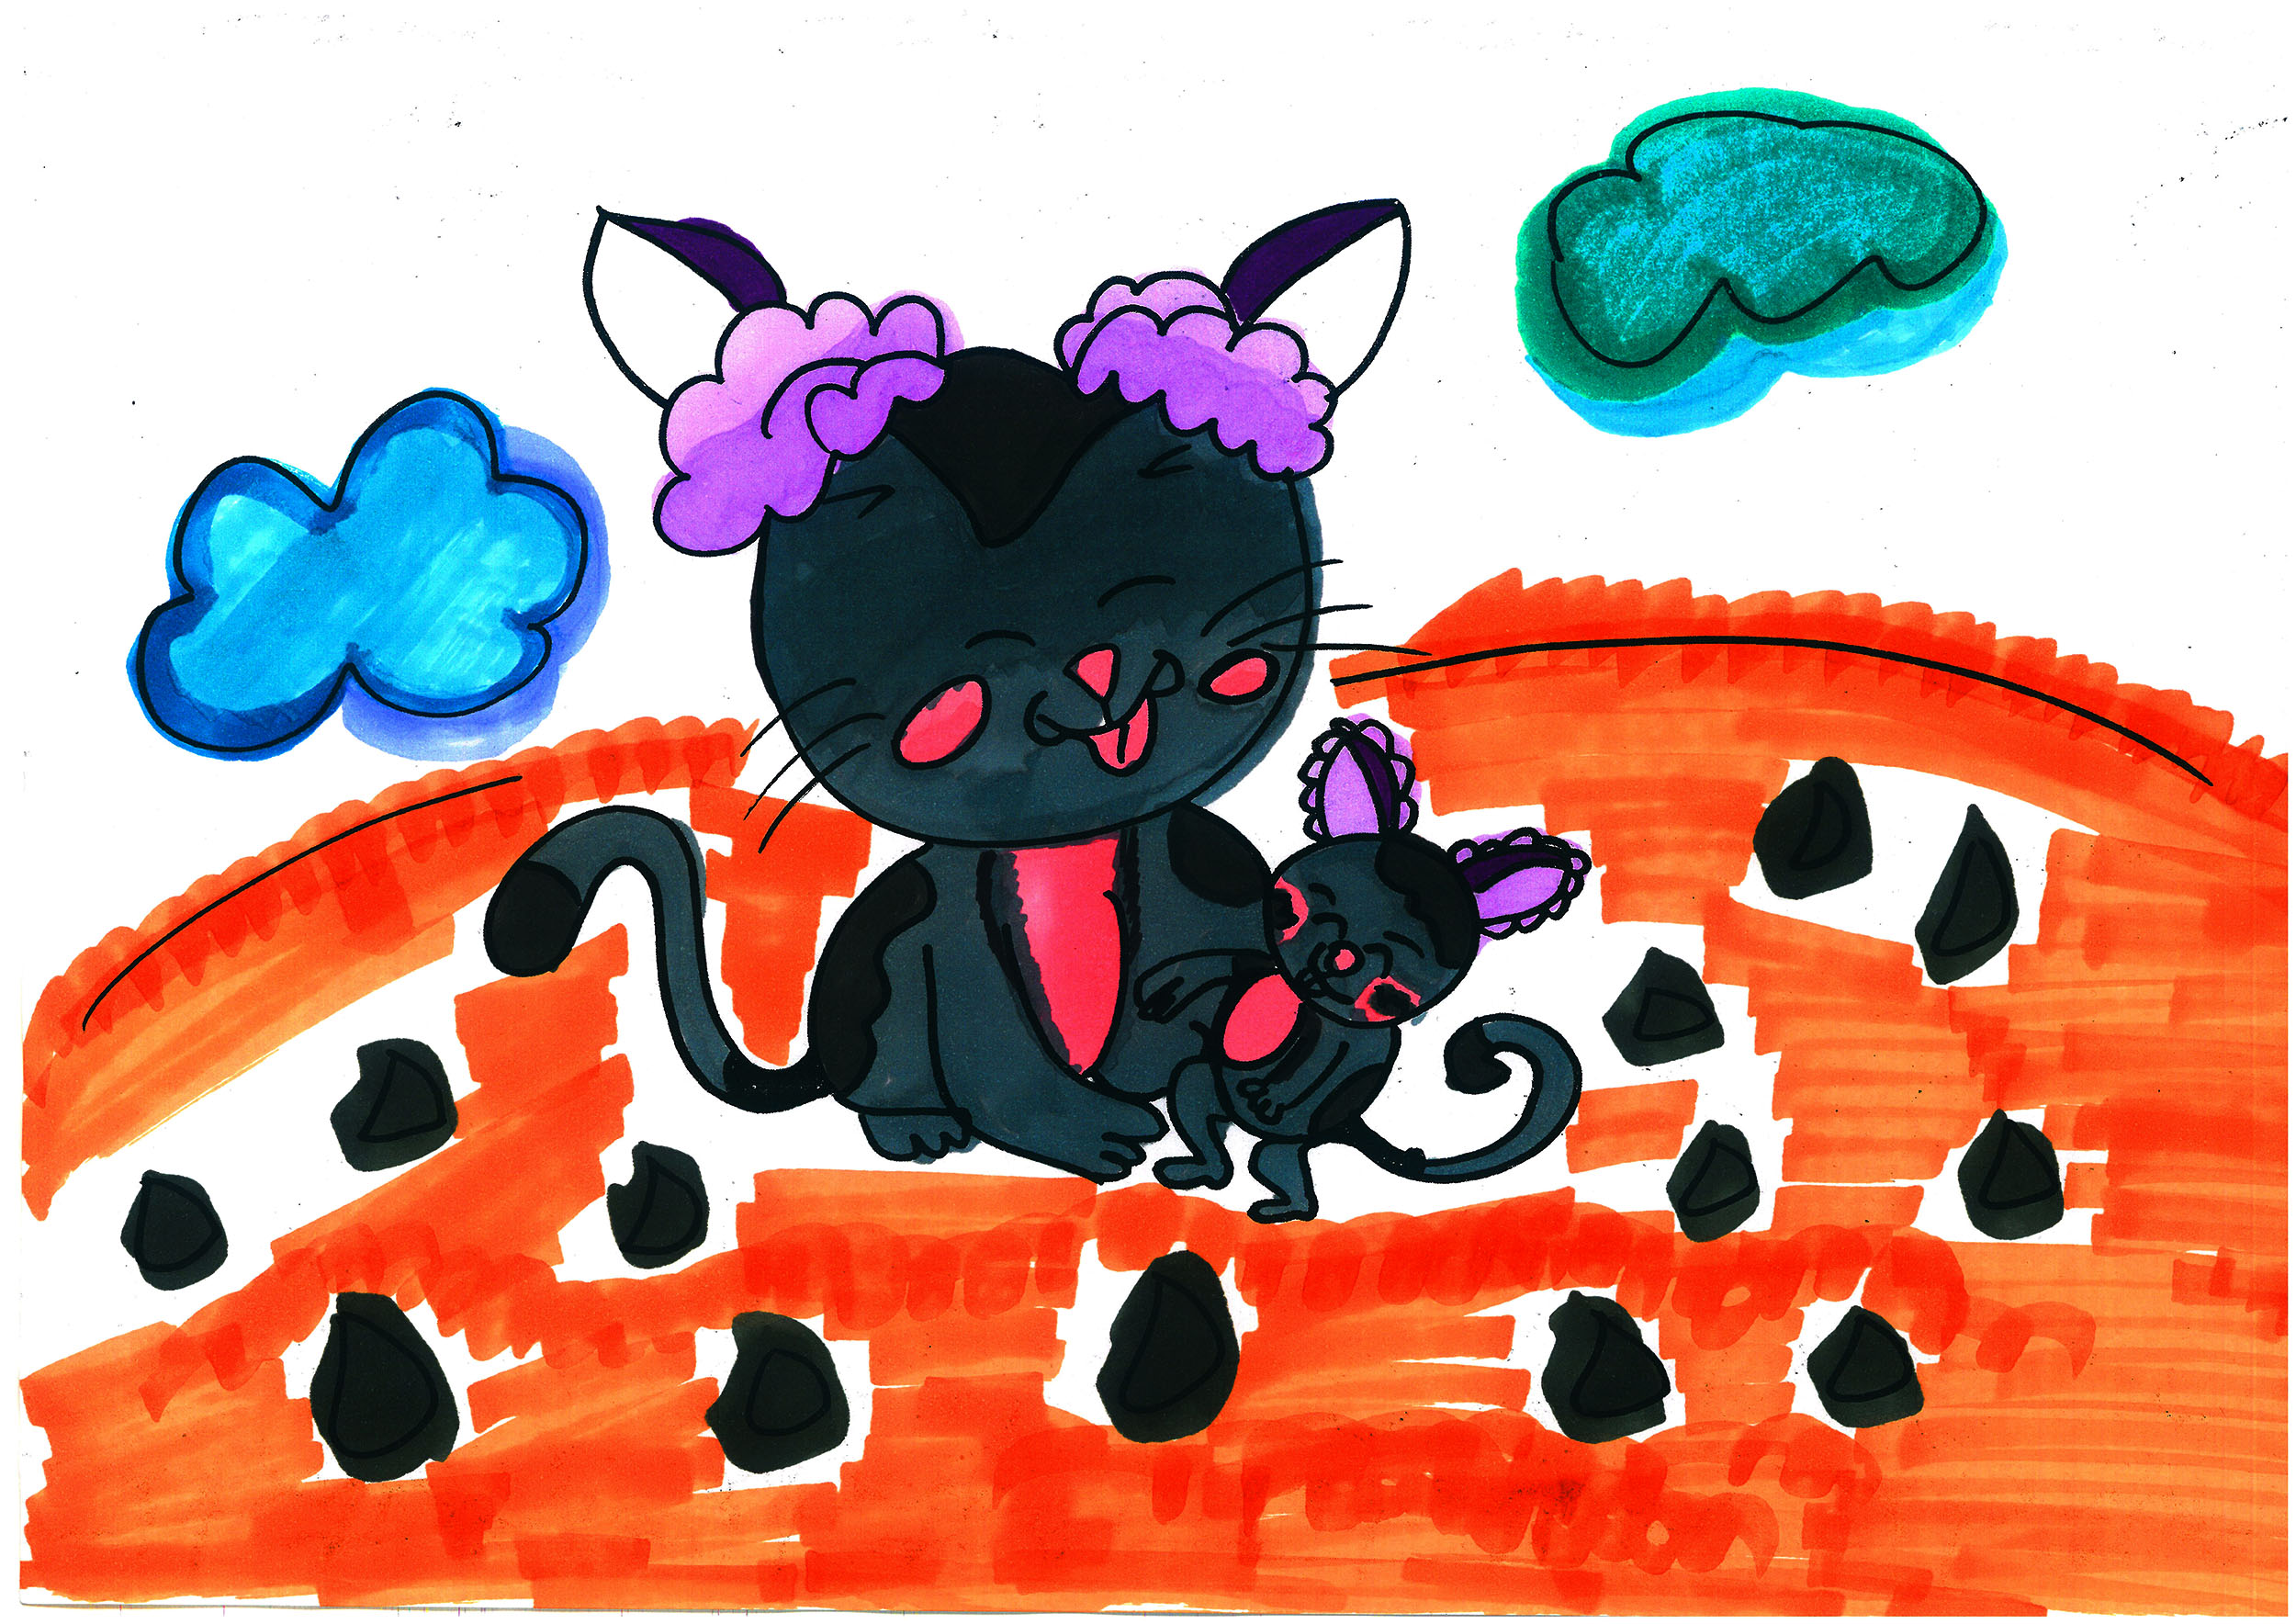 小猫彩色可爱简笔画怎么画